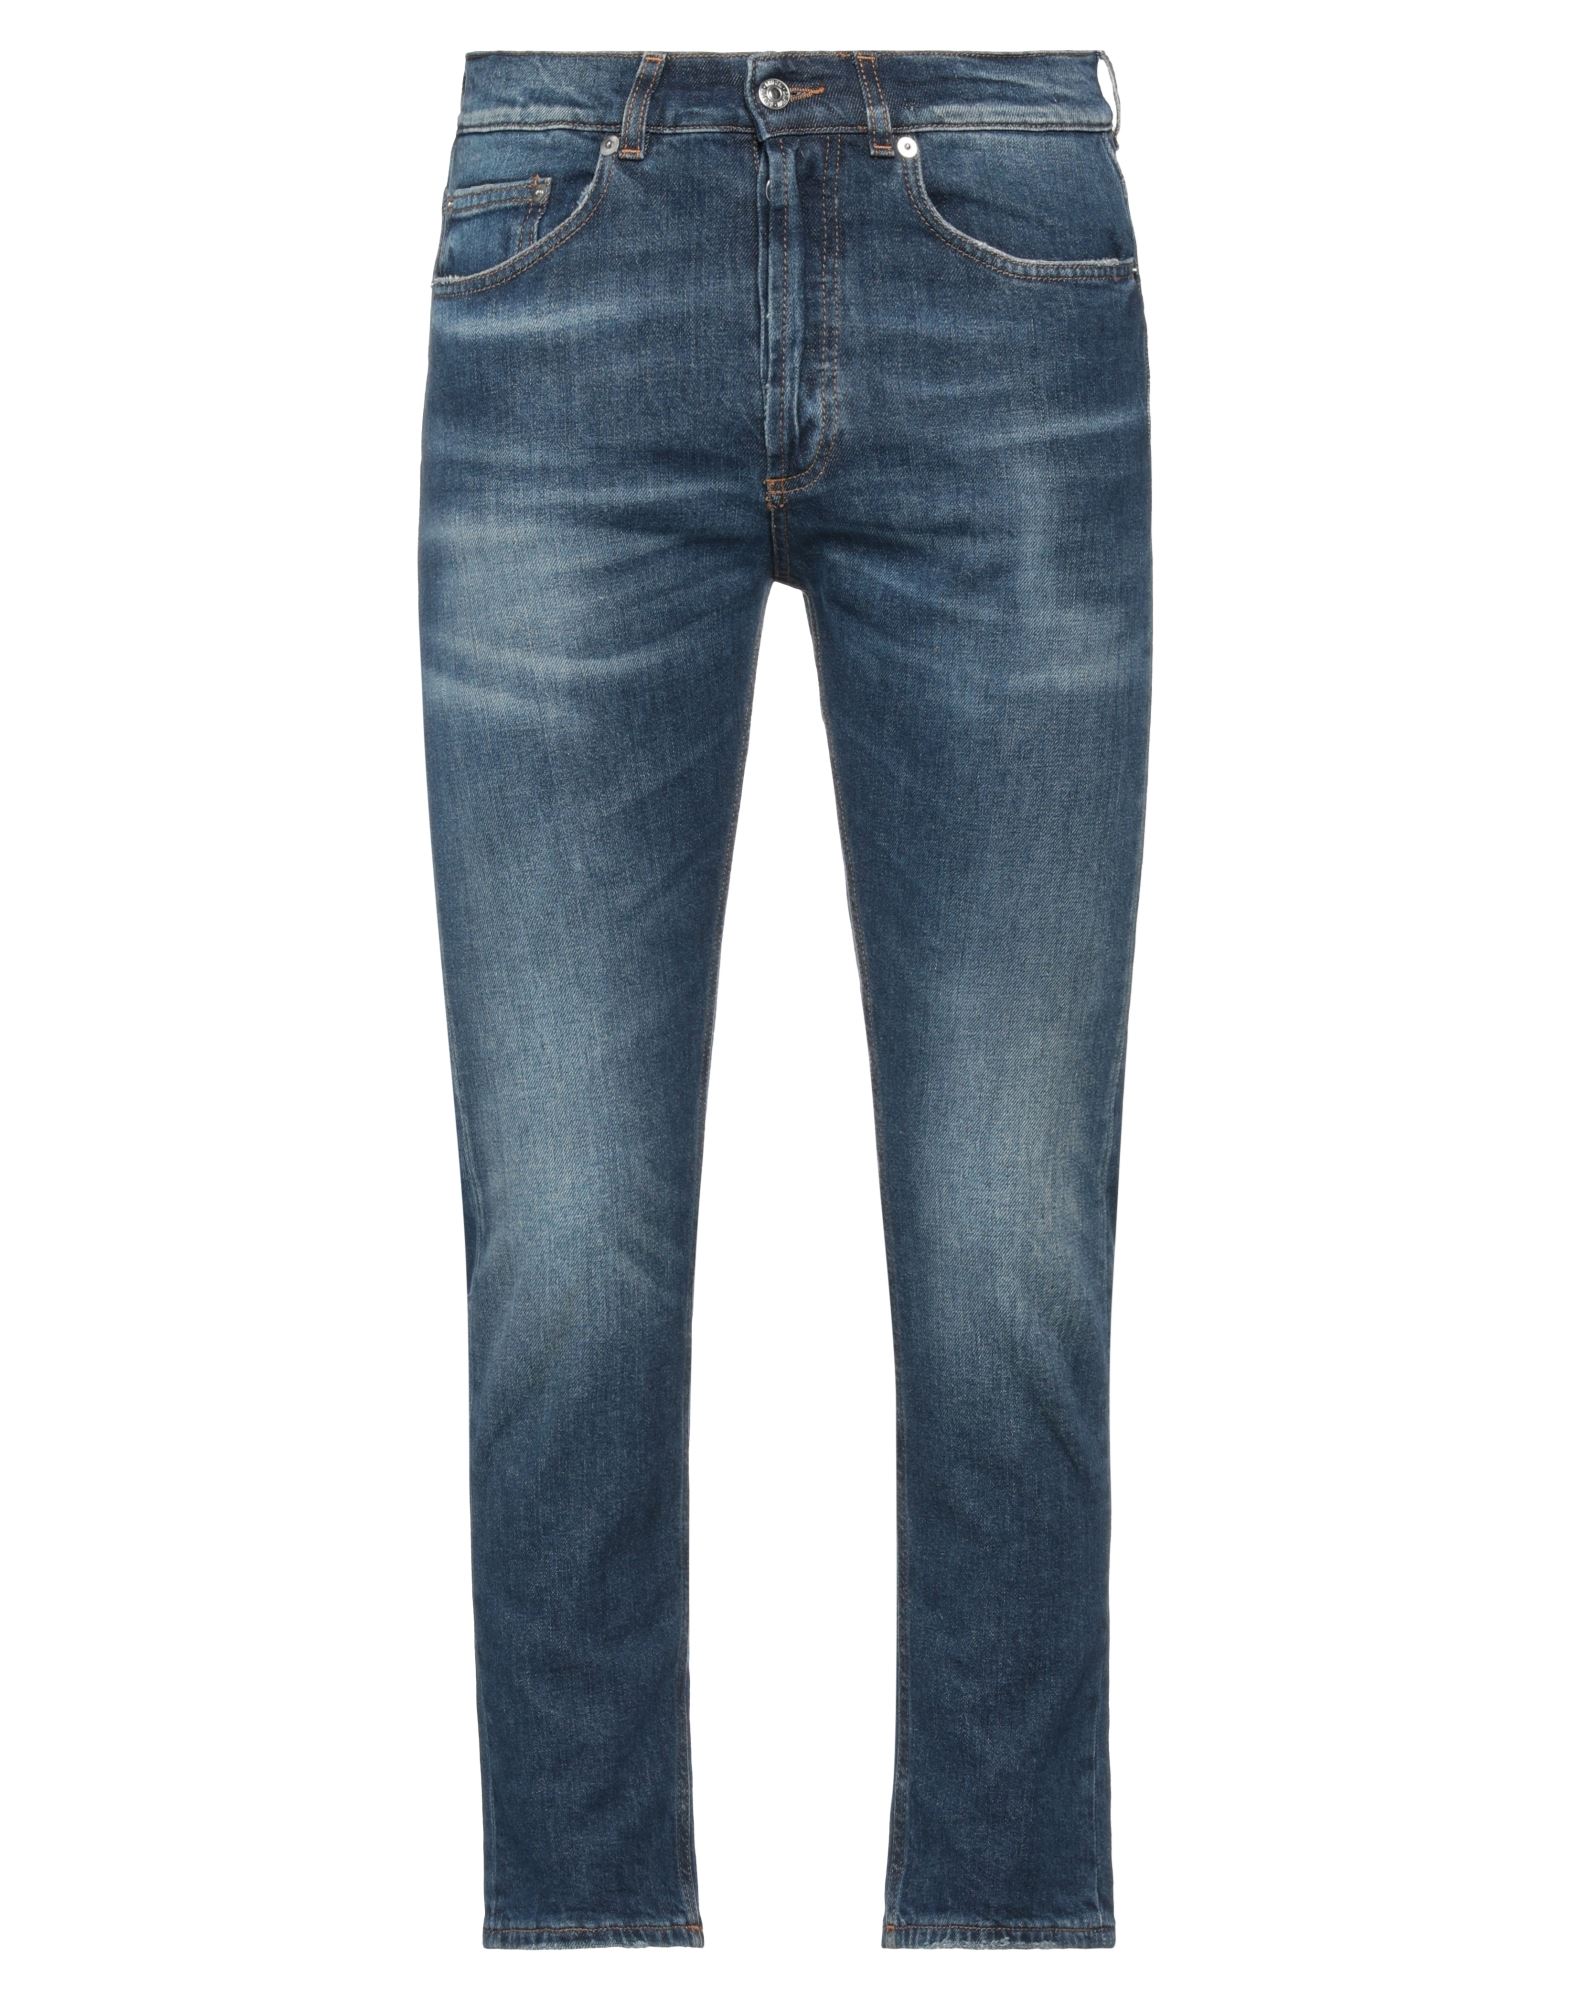 Shop Mauro Grifoni Grifoni Man Jeans Blue Size 30 Cotton, Elastane